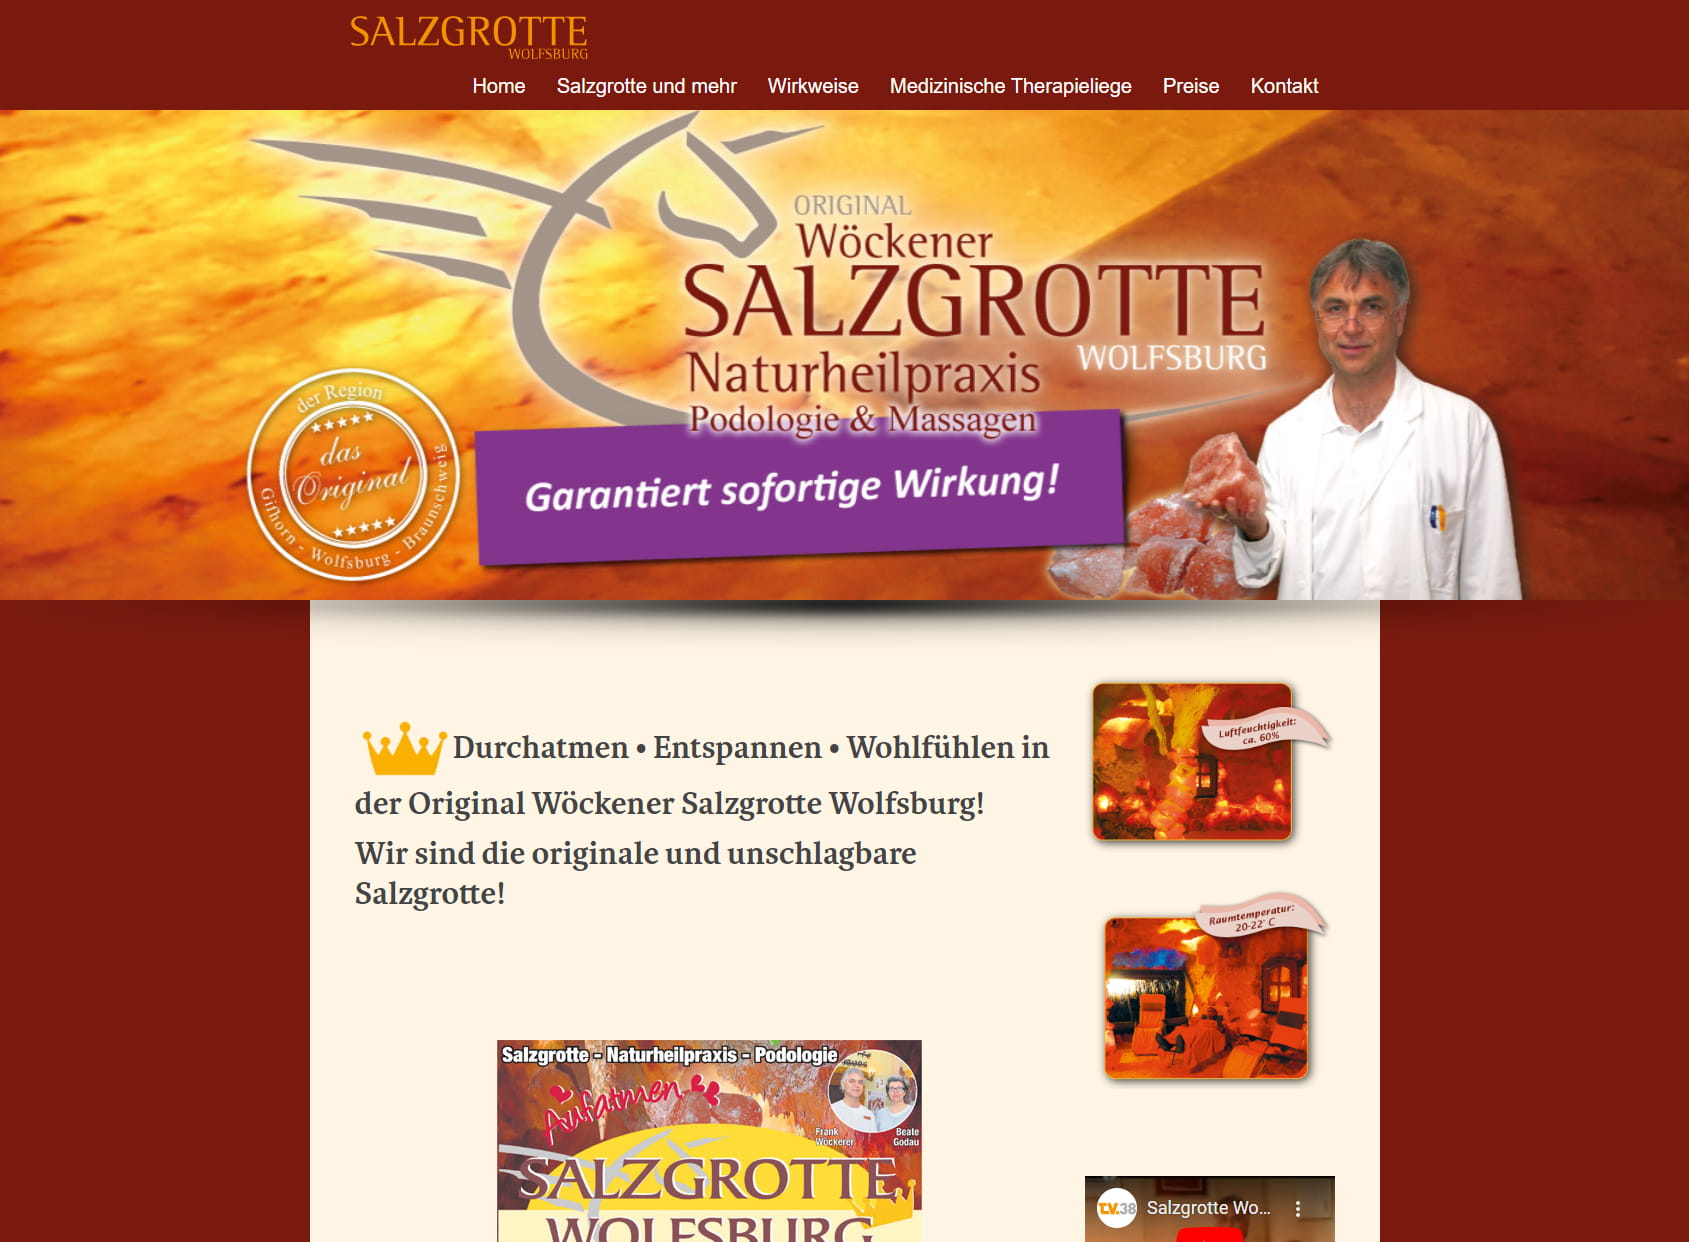 SALZGROTTE Wolfsburg - Naturheilpraxis - Podologie & Massagen